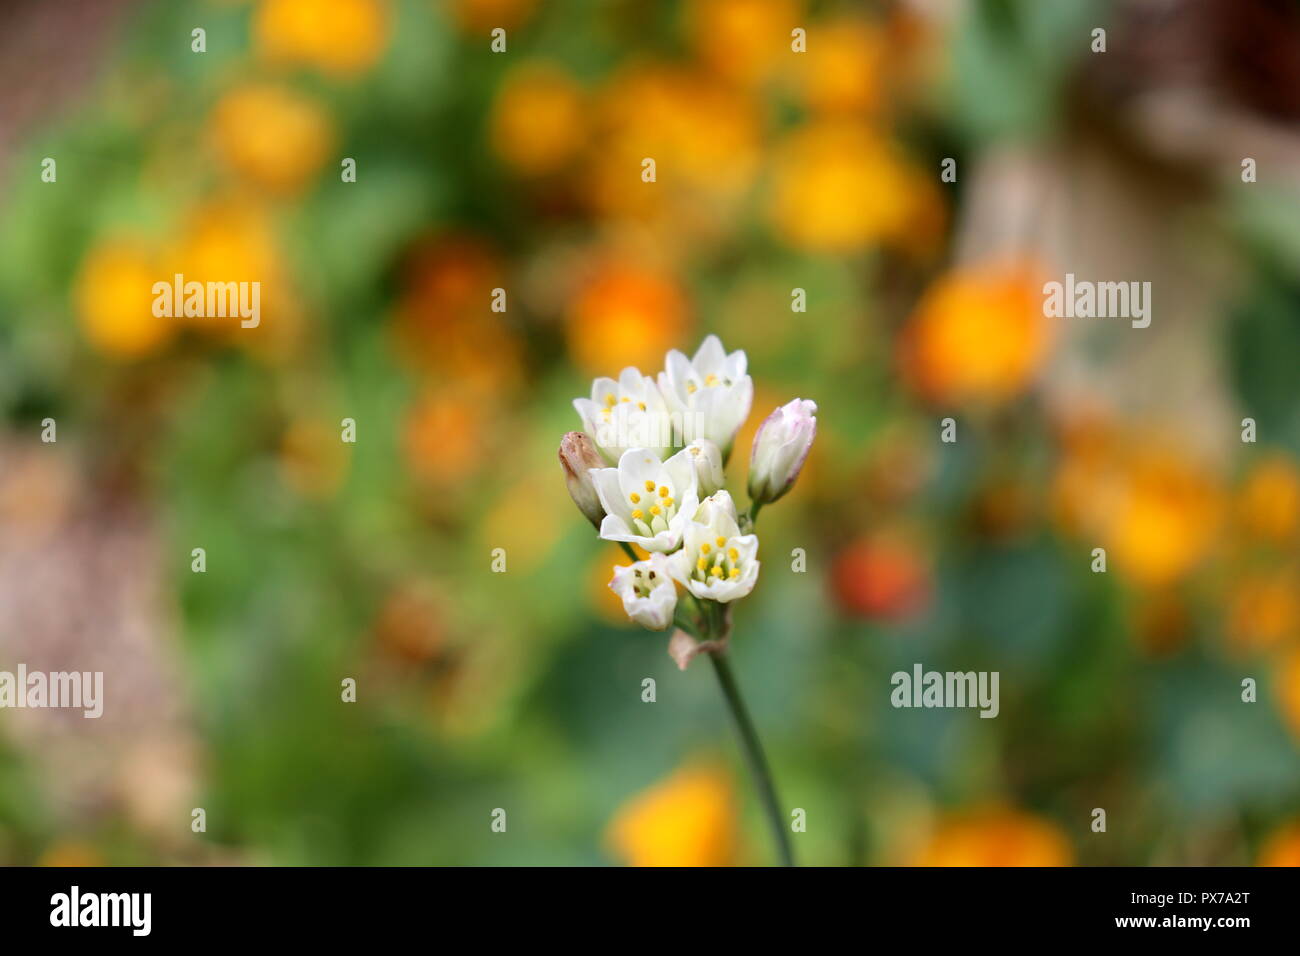 Une seule fleur blanche se détache sur une mer d'Orange : cette fleur solitaire aurait fière allure sur des calendriers et des cartes Banque D'Images